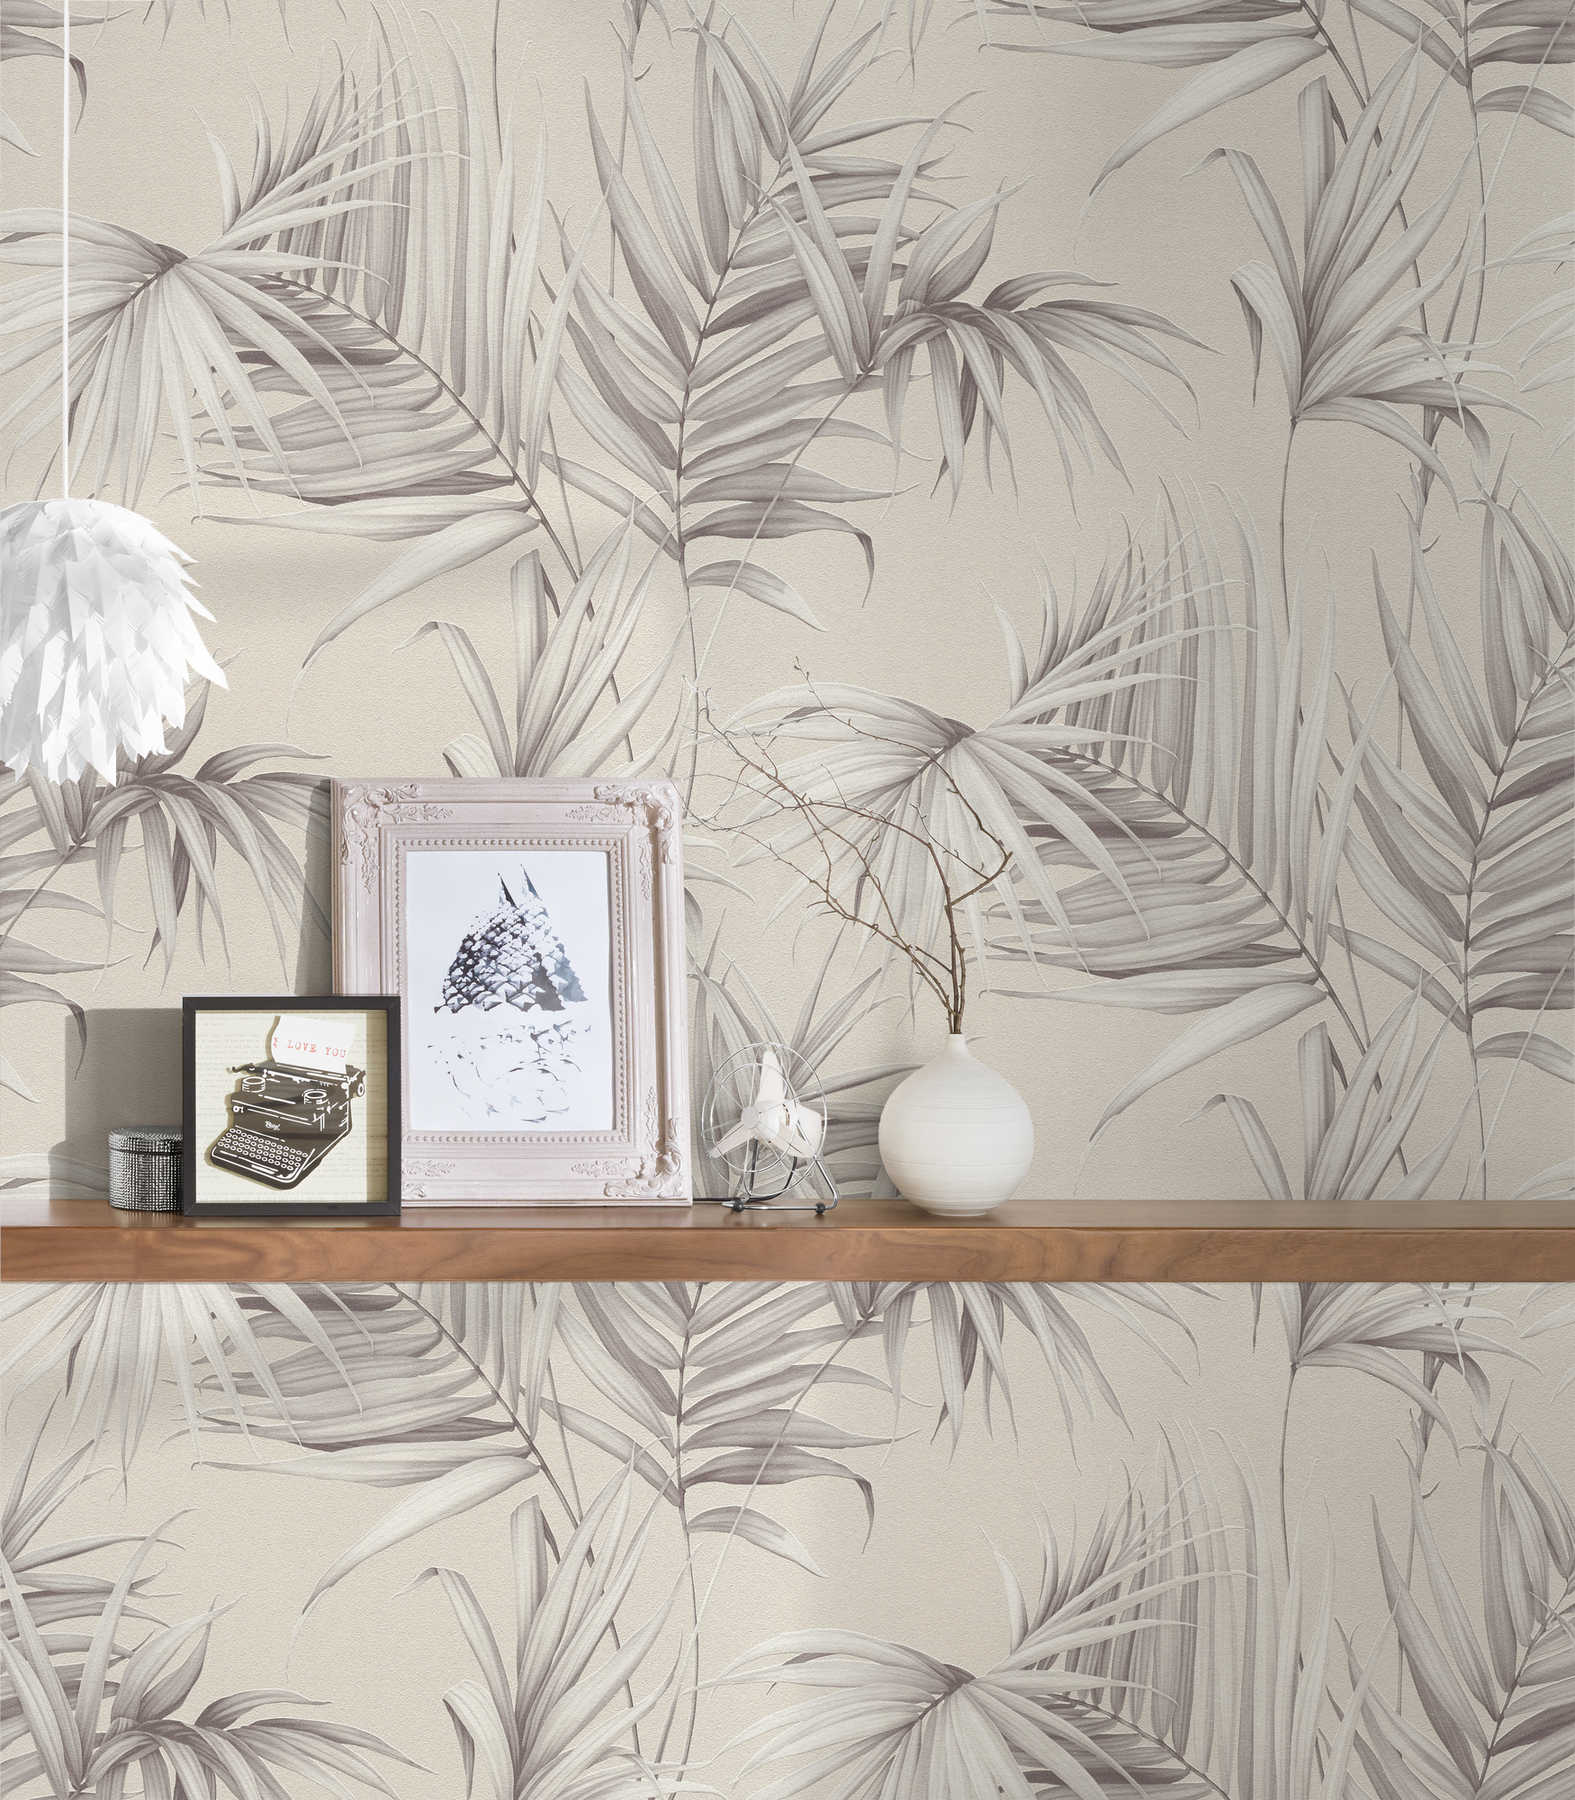             Feuilles de palmier papier peint avec effet structuré - beige, gris
        